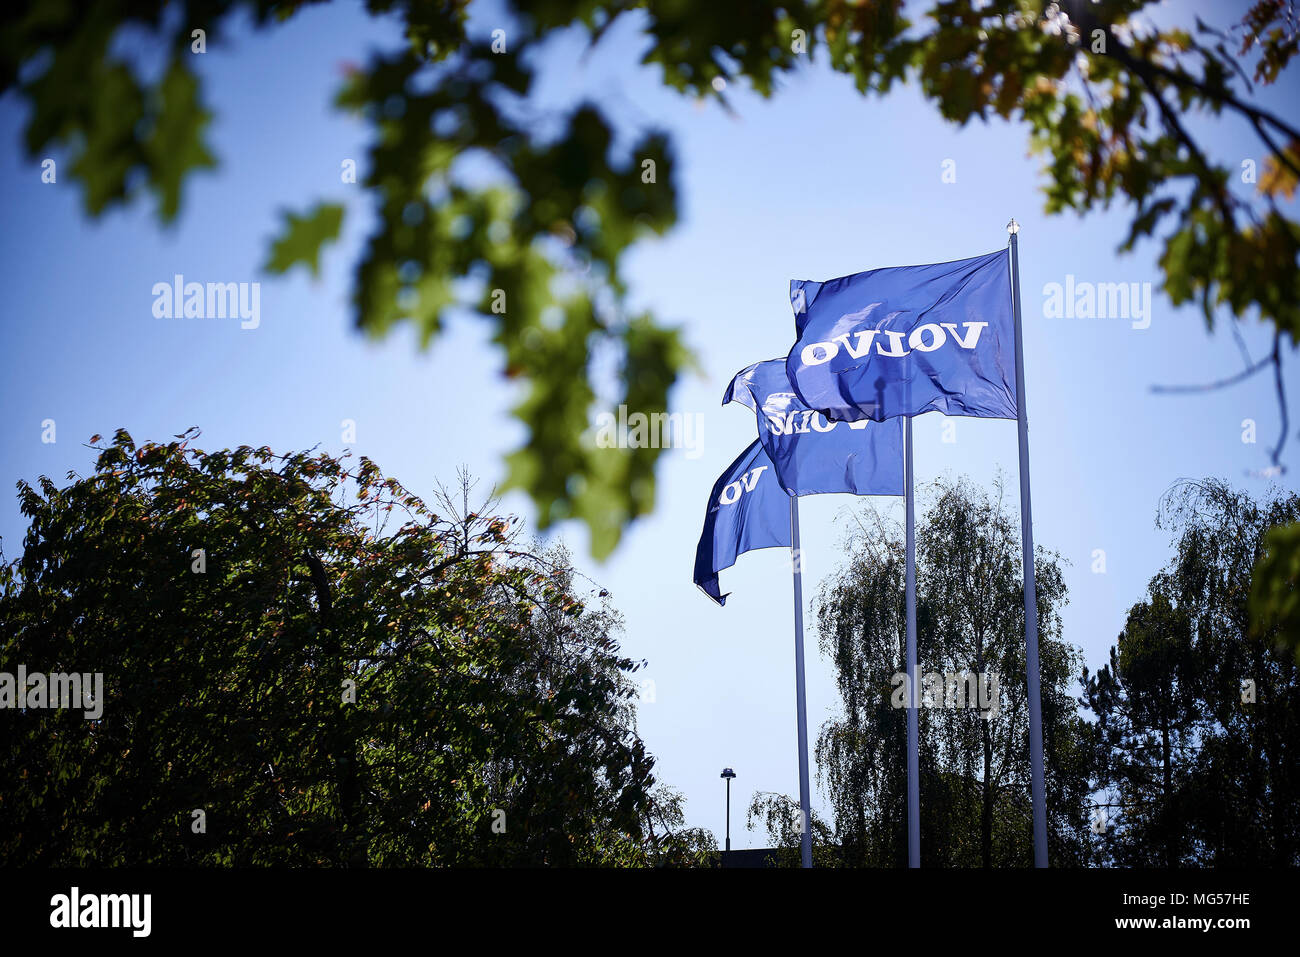 Flag of Volvo Stock Photo